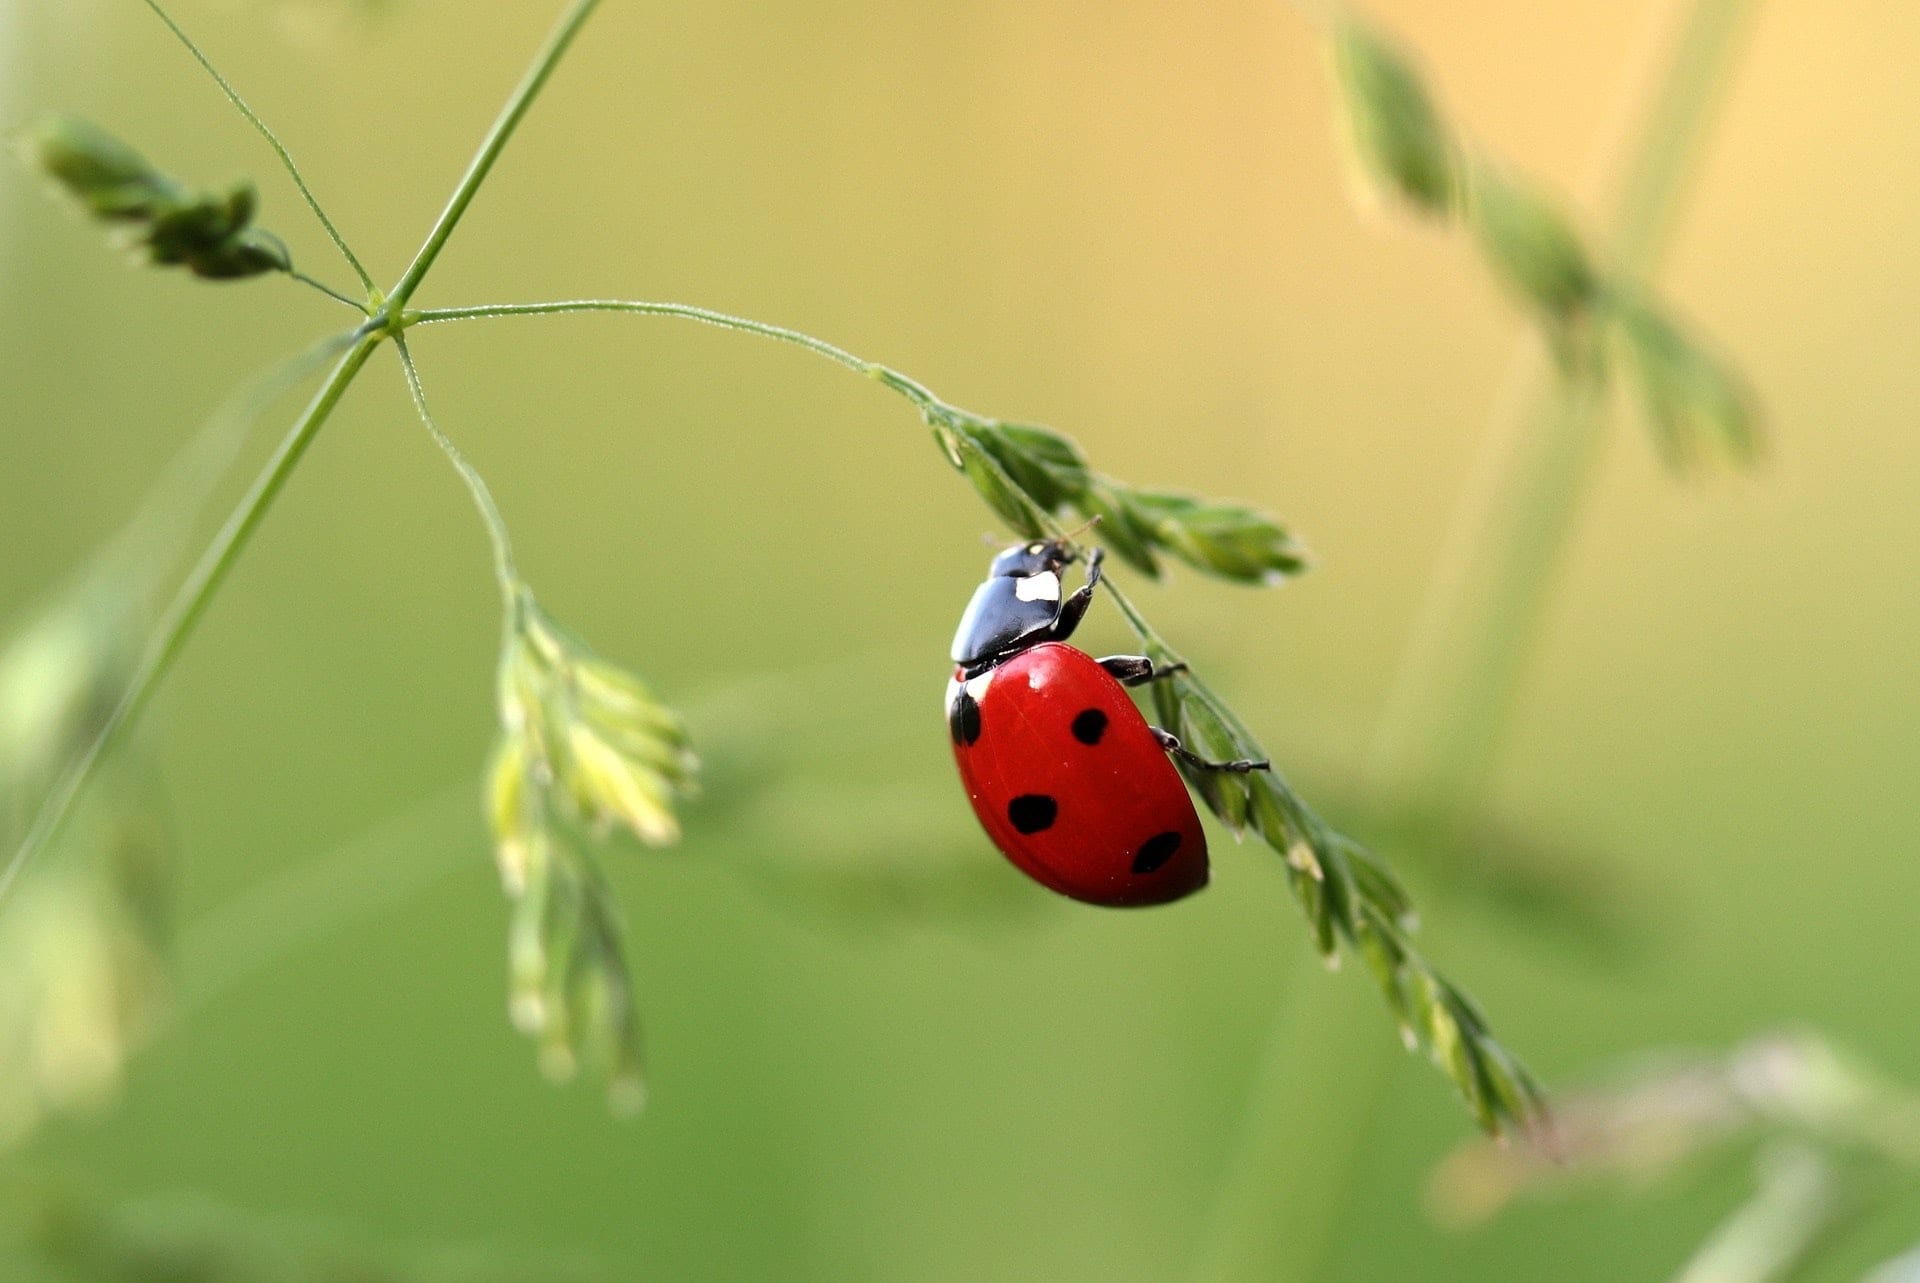 close-up-photo-of-ladybug-on-leaf-during-daytime-121472